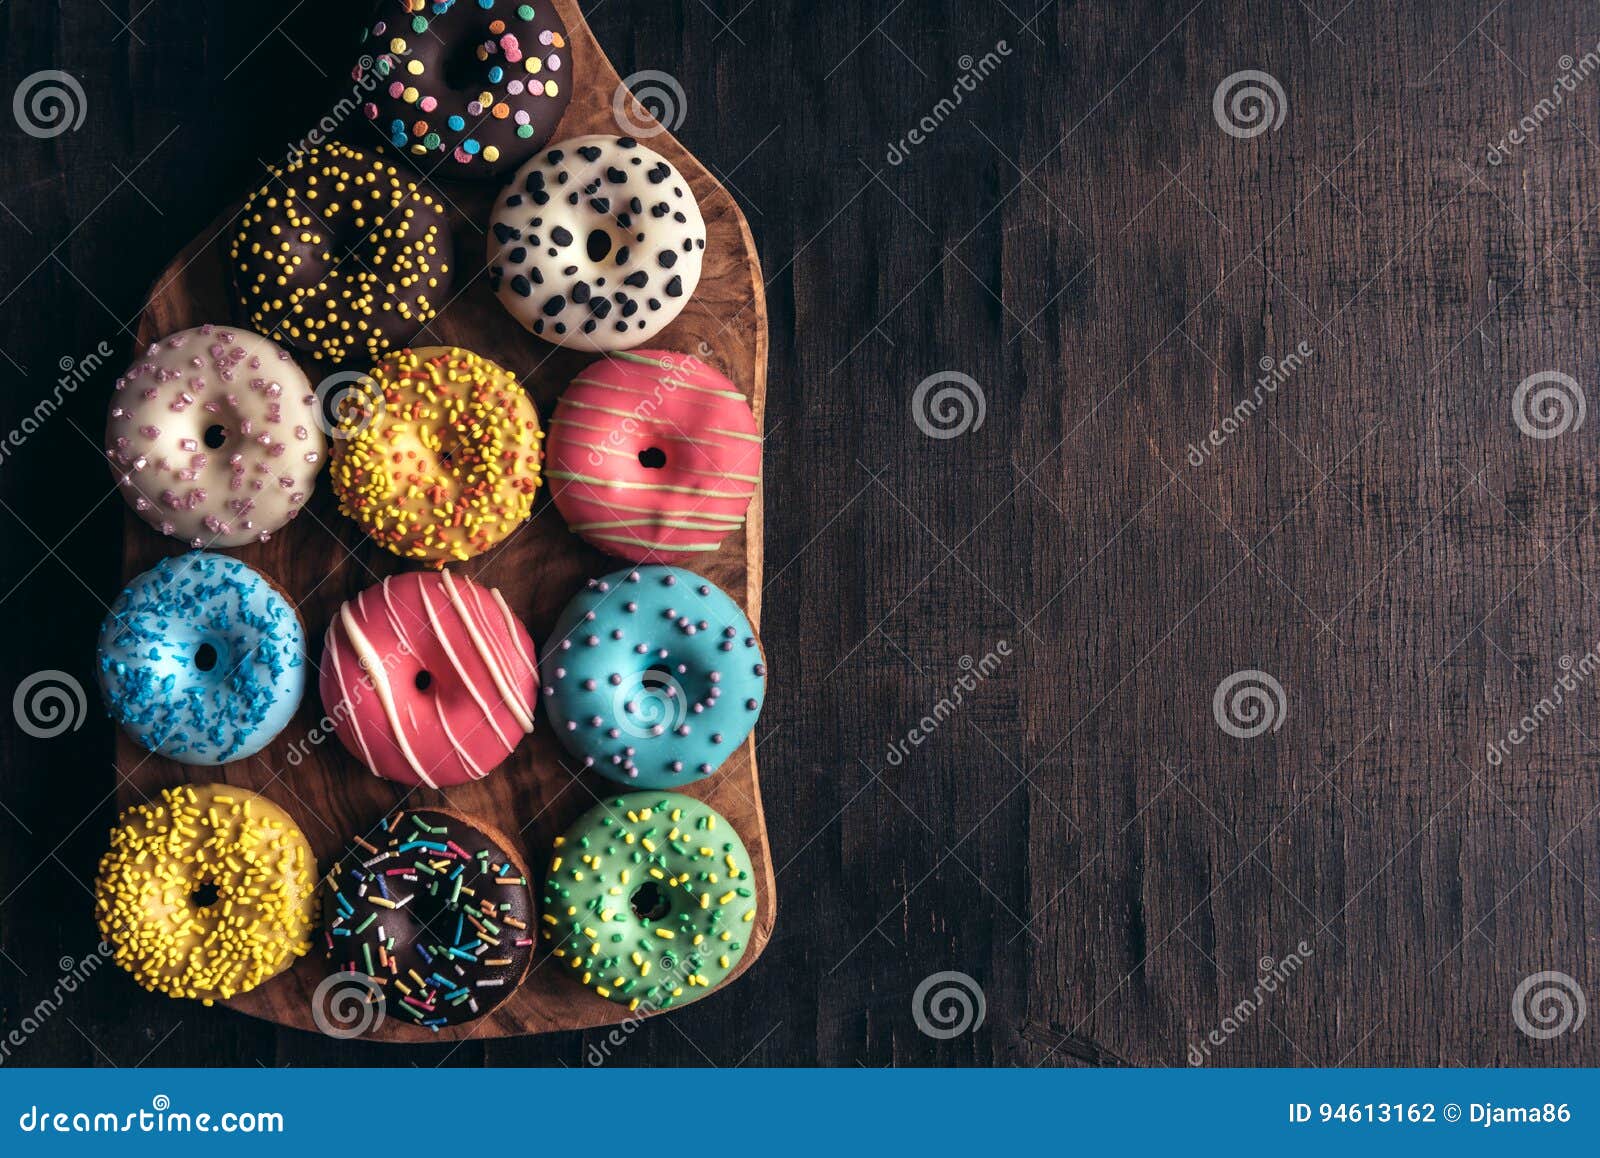 glazed mini donuts